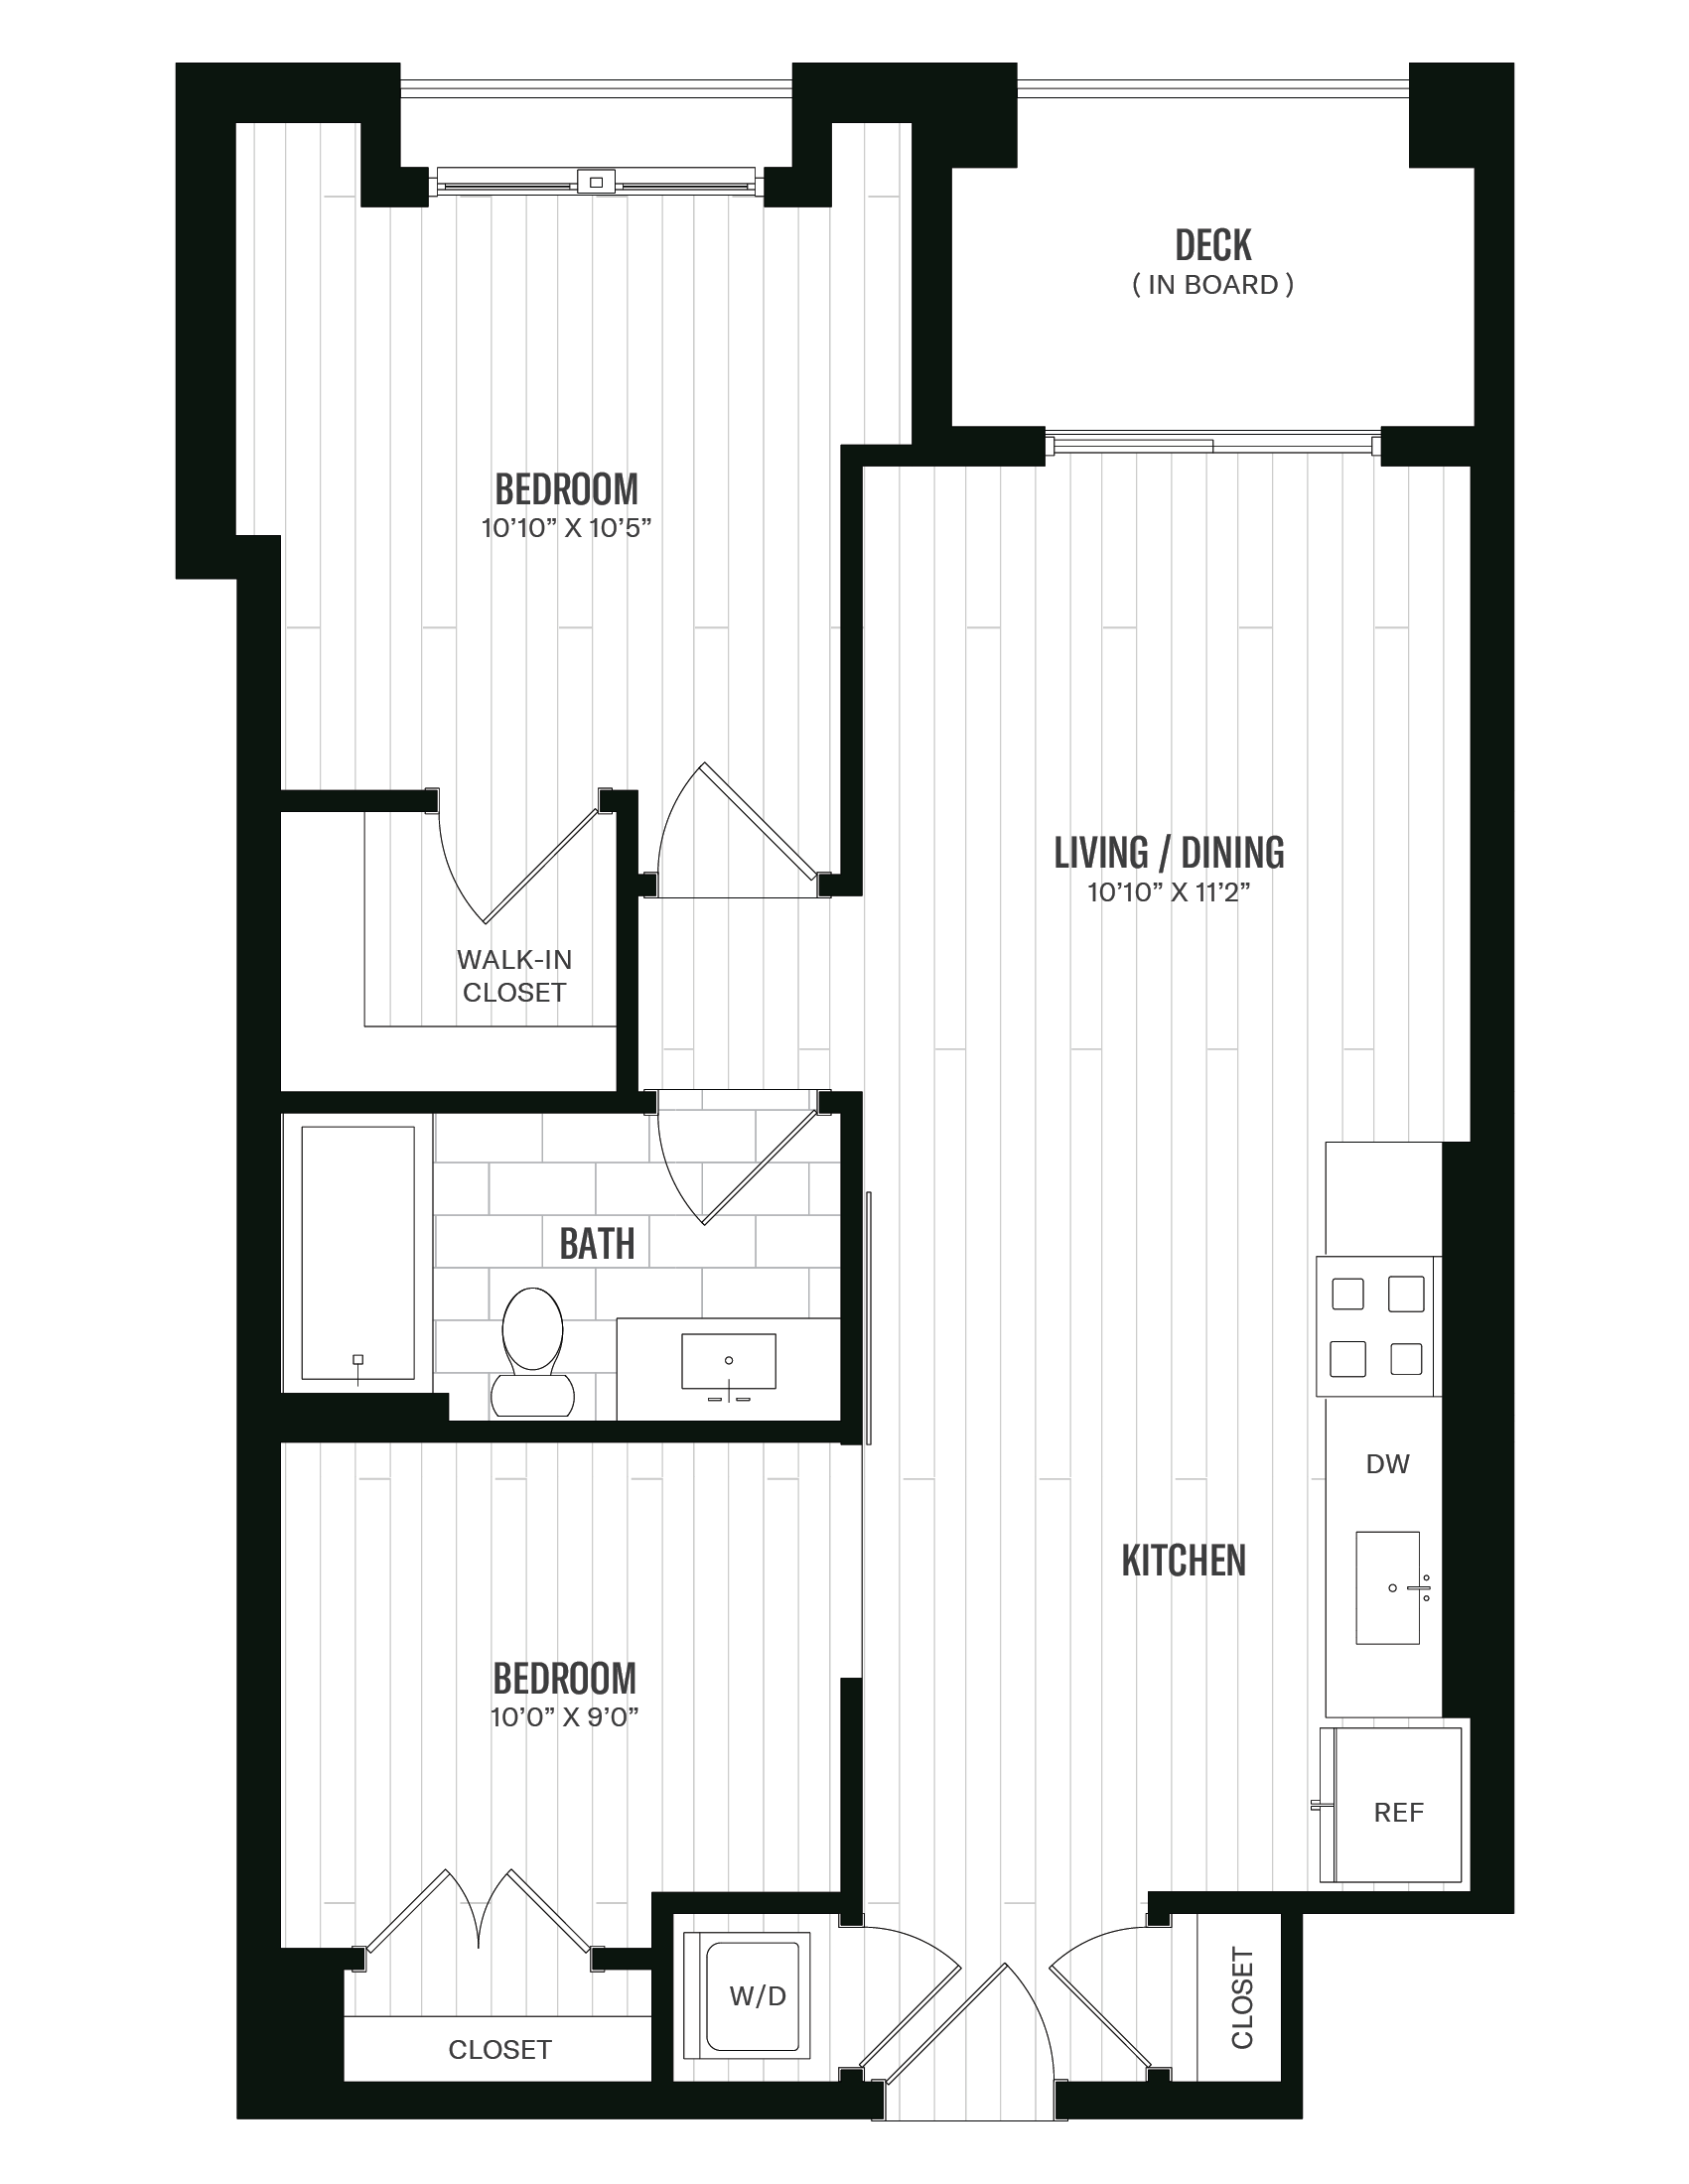 Floorplan image of unit 526